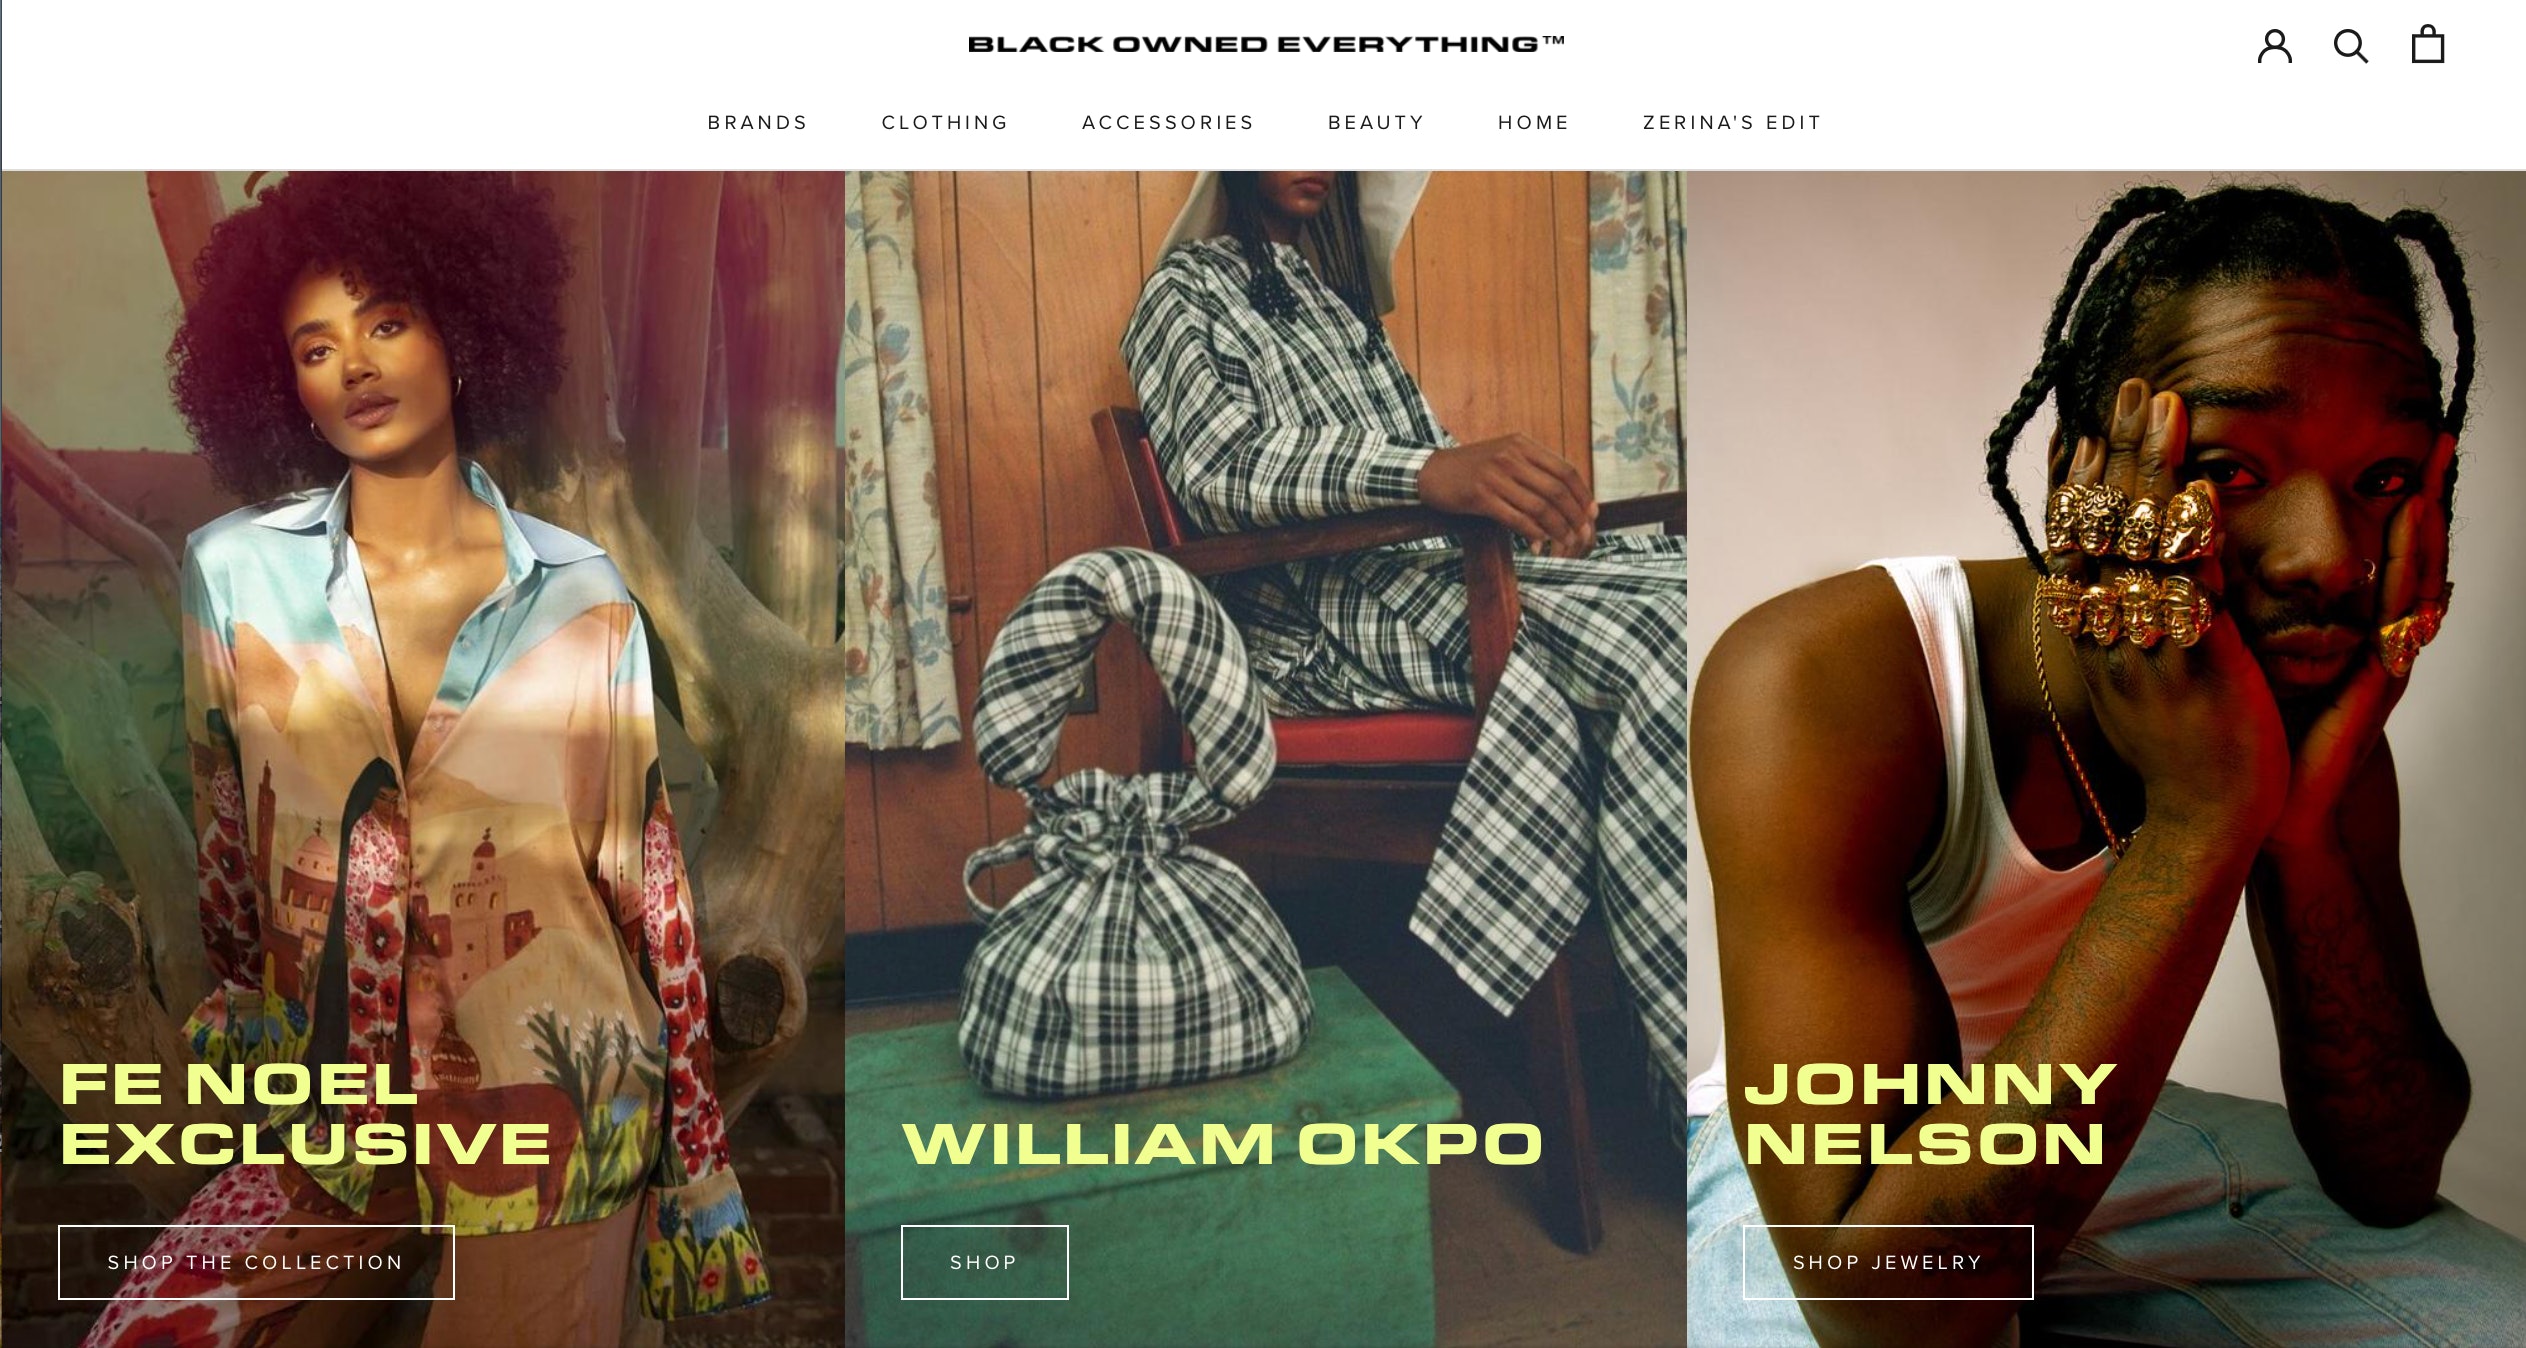 Die digitale Schaufensterfront von Zerina Akers hebt Marken in schwarzem Besitz hervor